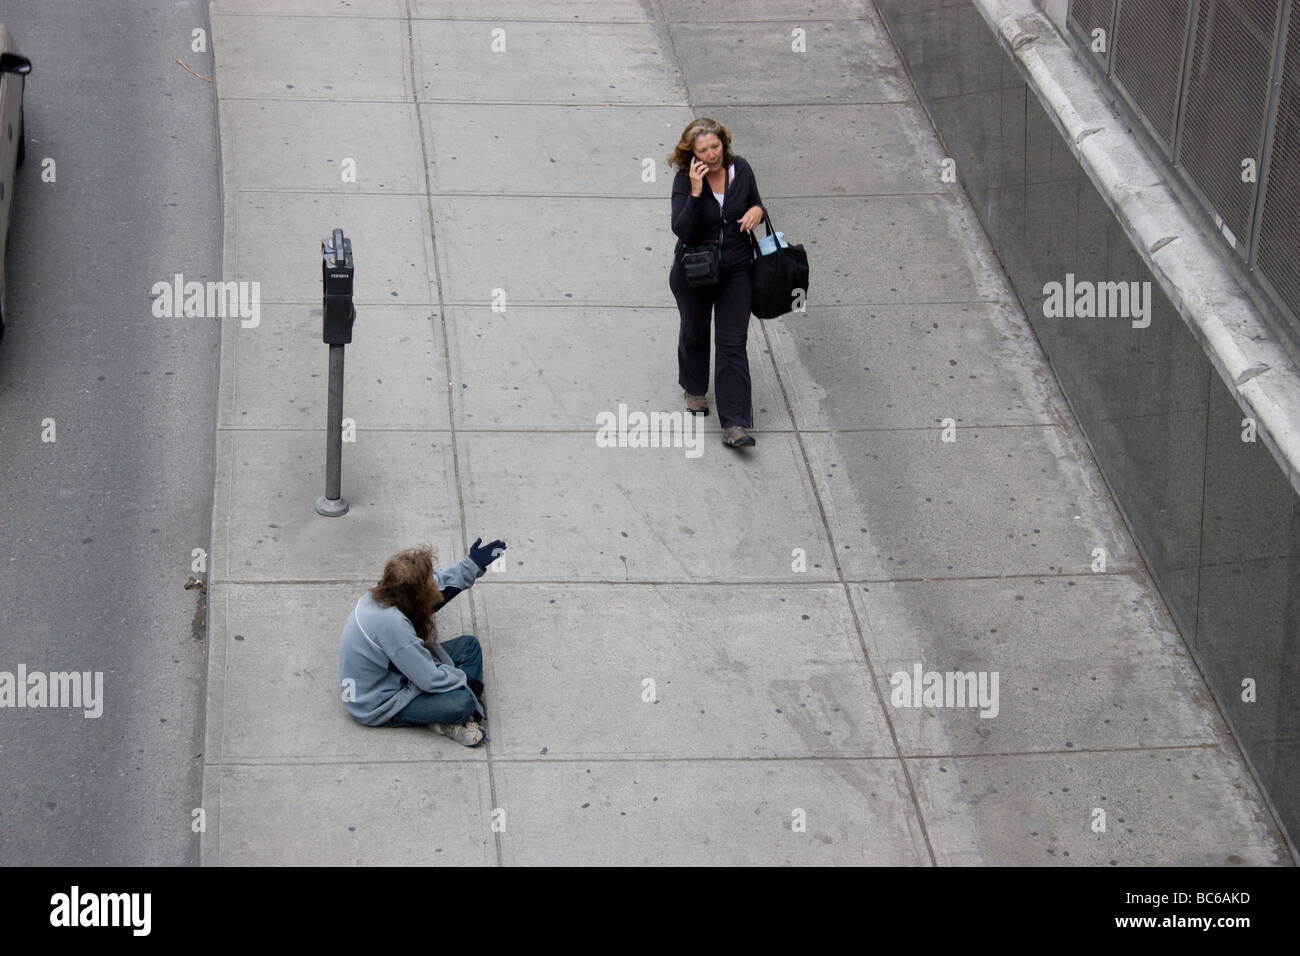 Riches pauvres inégalités de division, Vancouver Canada sans-abri vagabond vagabond gastown mendiant pour de l'argent des touristes, avec la femme passant sur le téléphone mobile Banque D'Images